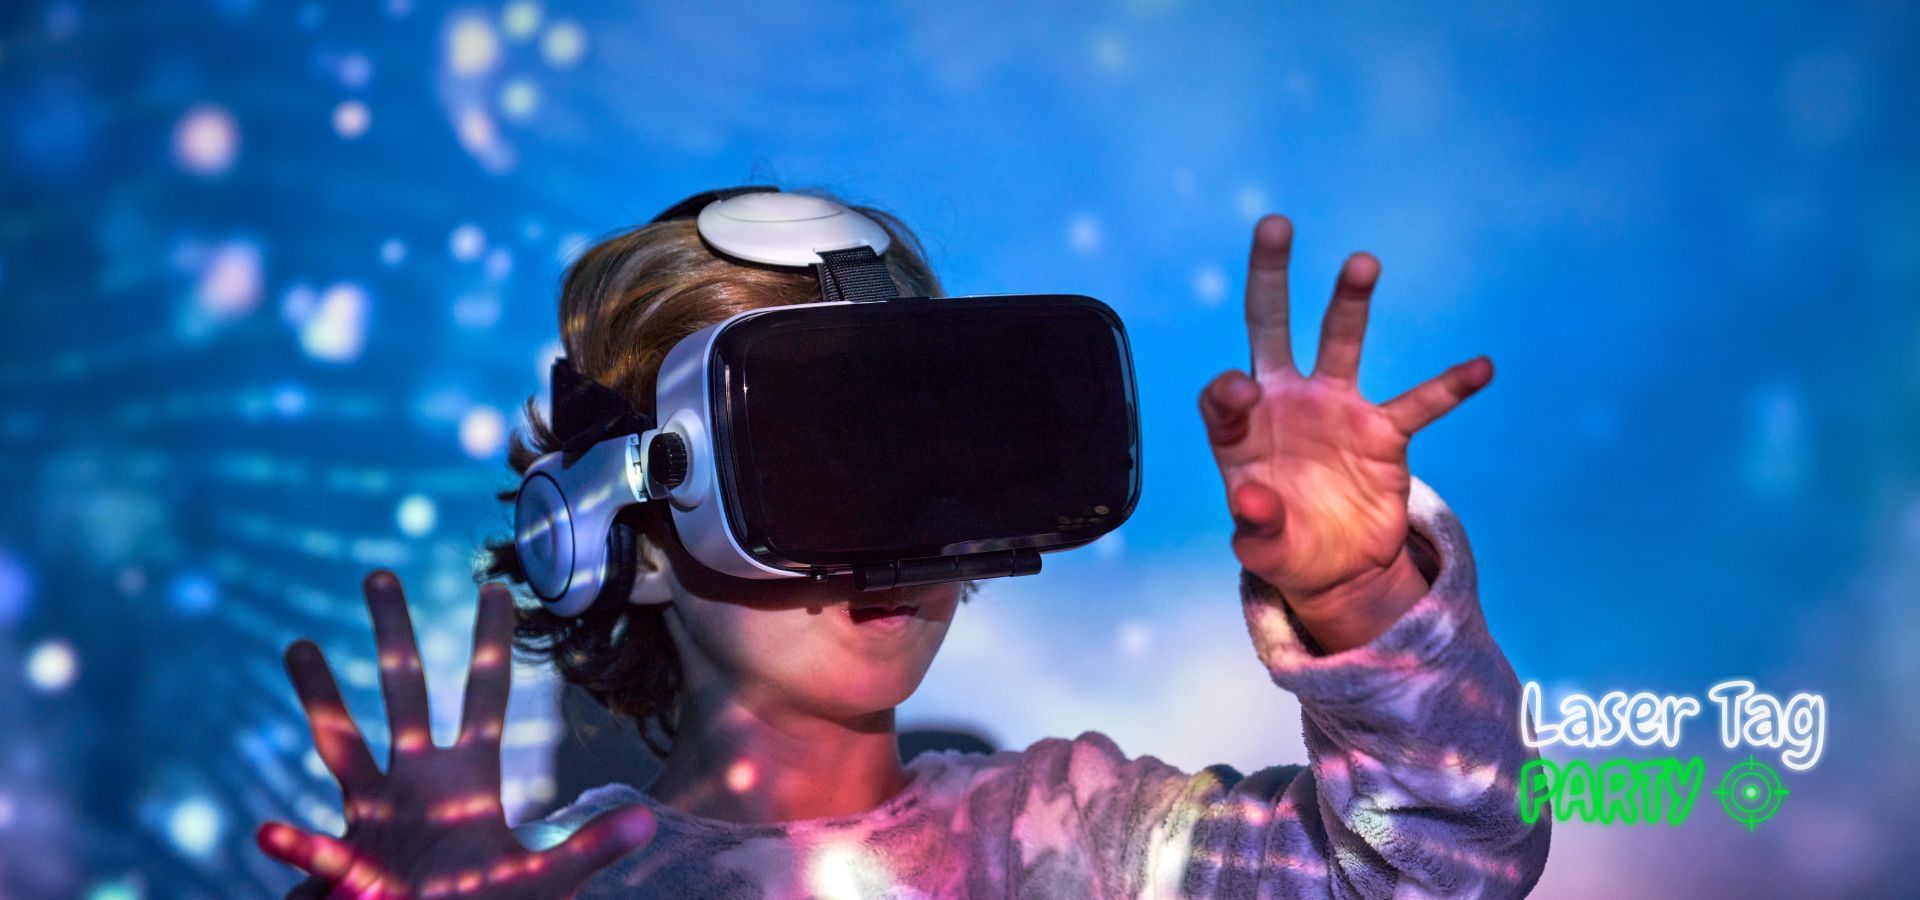 Explorând Ochelarii VR la Laser Tag Ploiești: O Aventură Virtuală pentru Petrecerile Copiilor